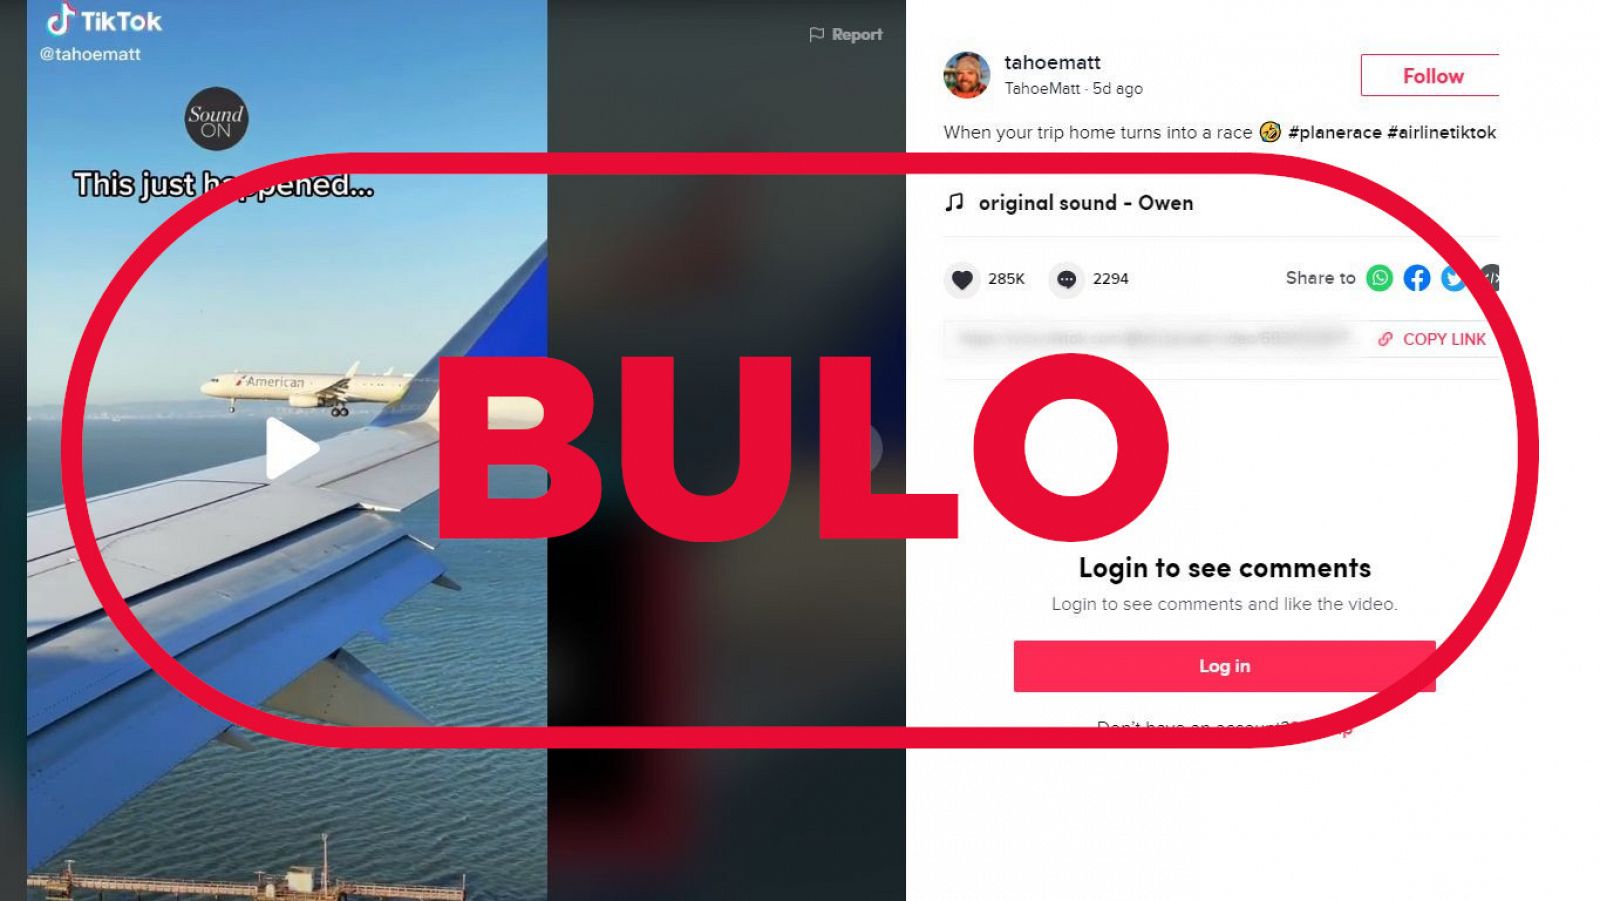 Imagen del video de TikTok de dos aviones volando en paralelo con el sello bulo en rojo de VerificaRTVE